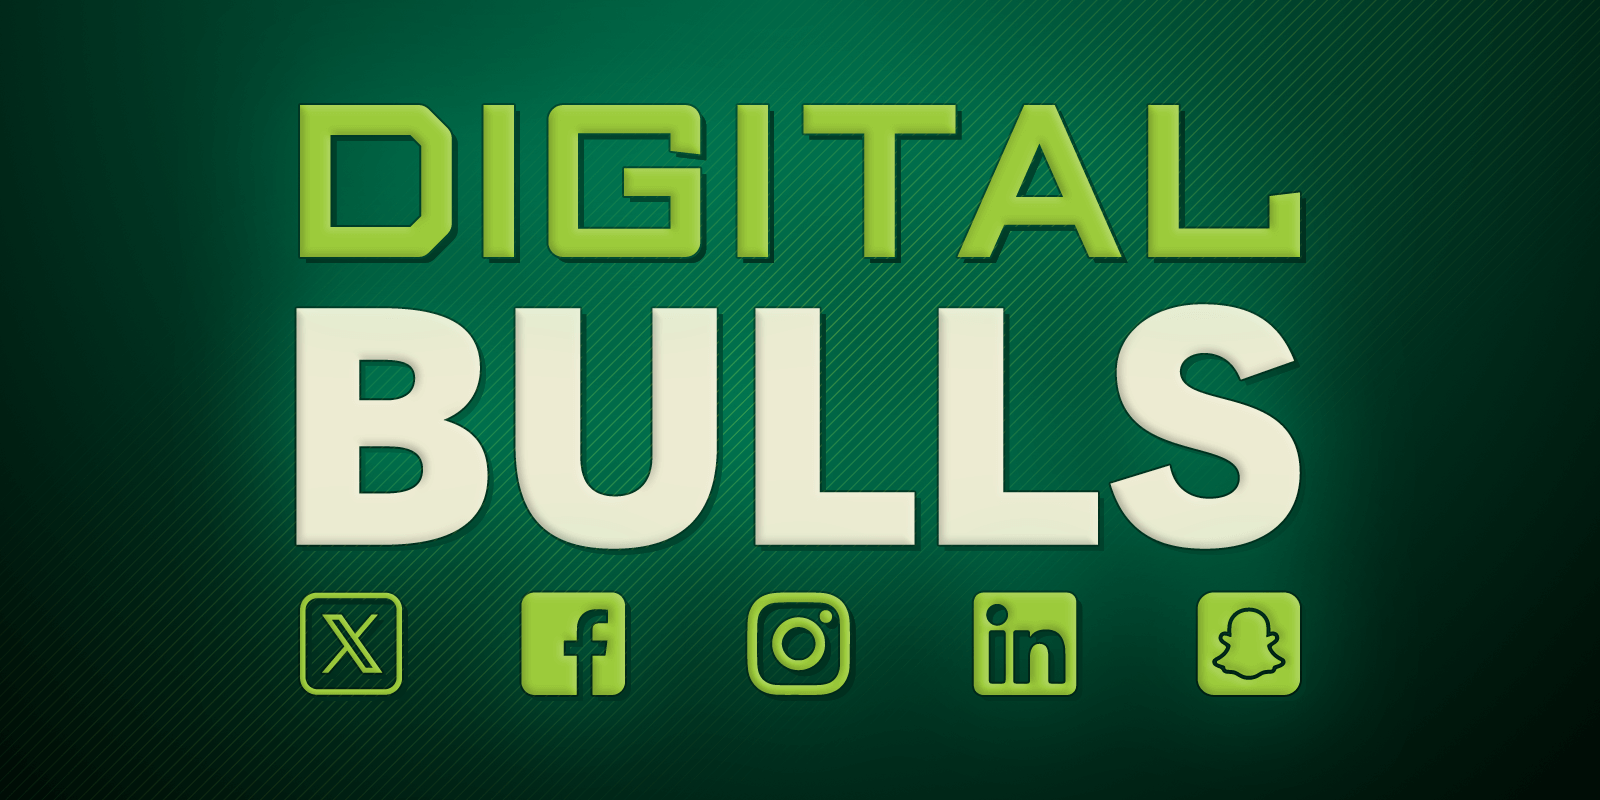 Digital Bulls